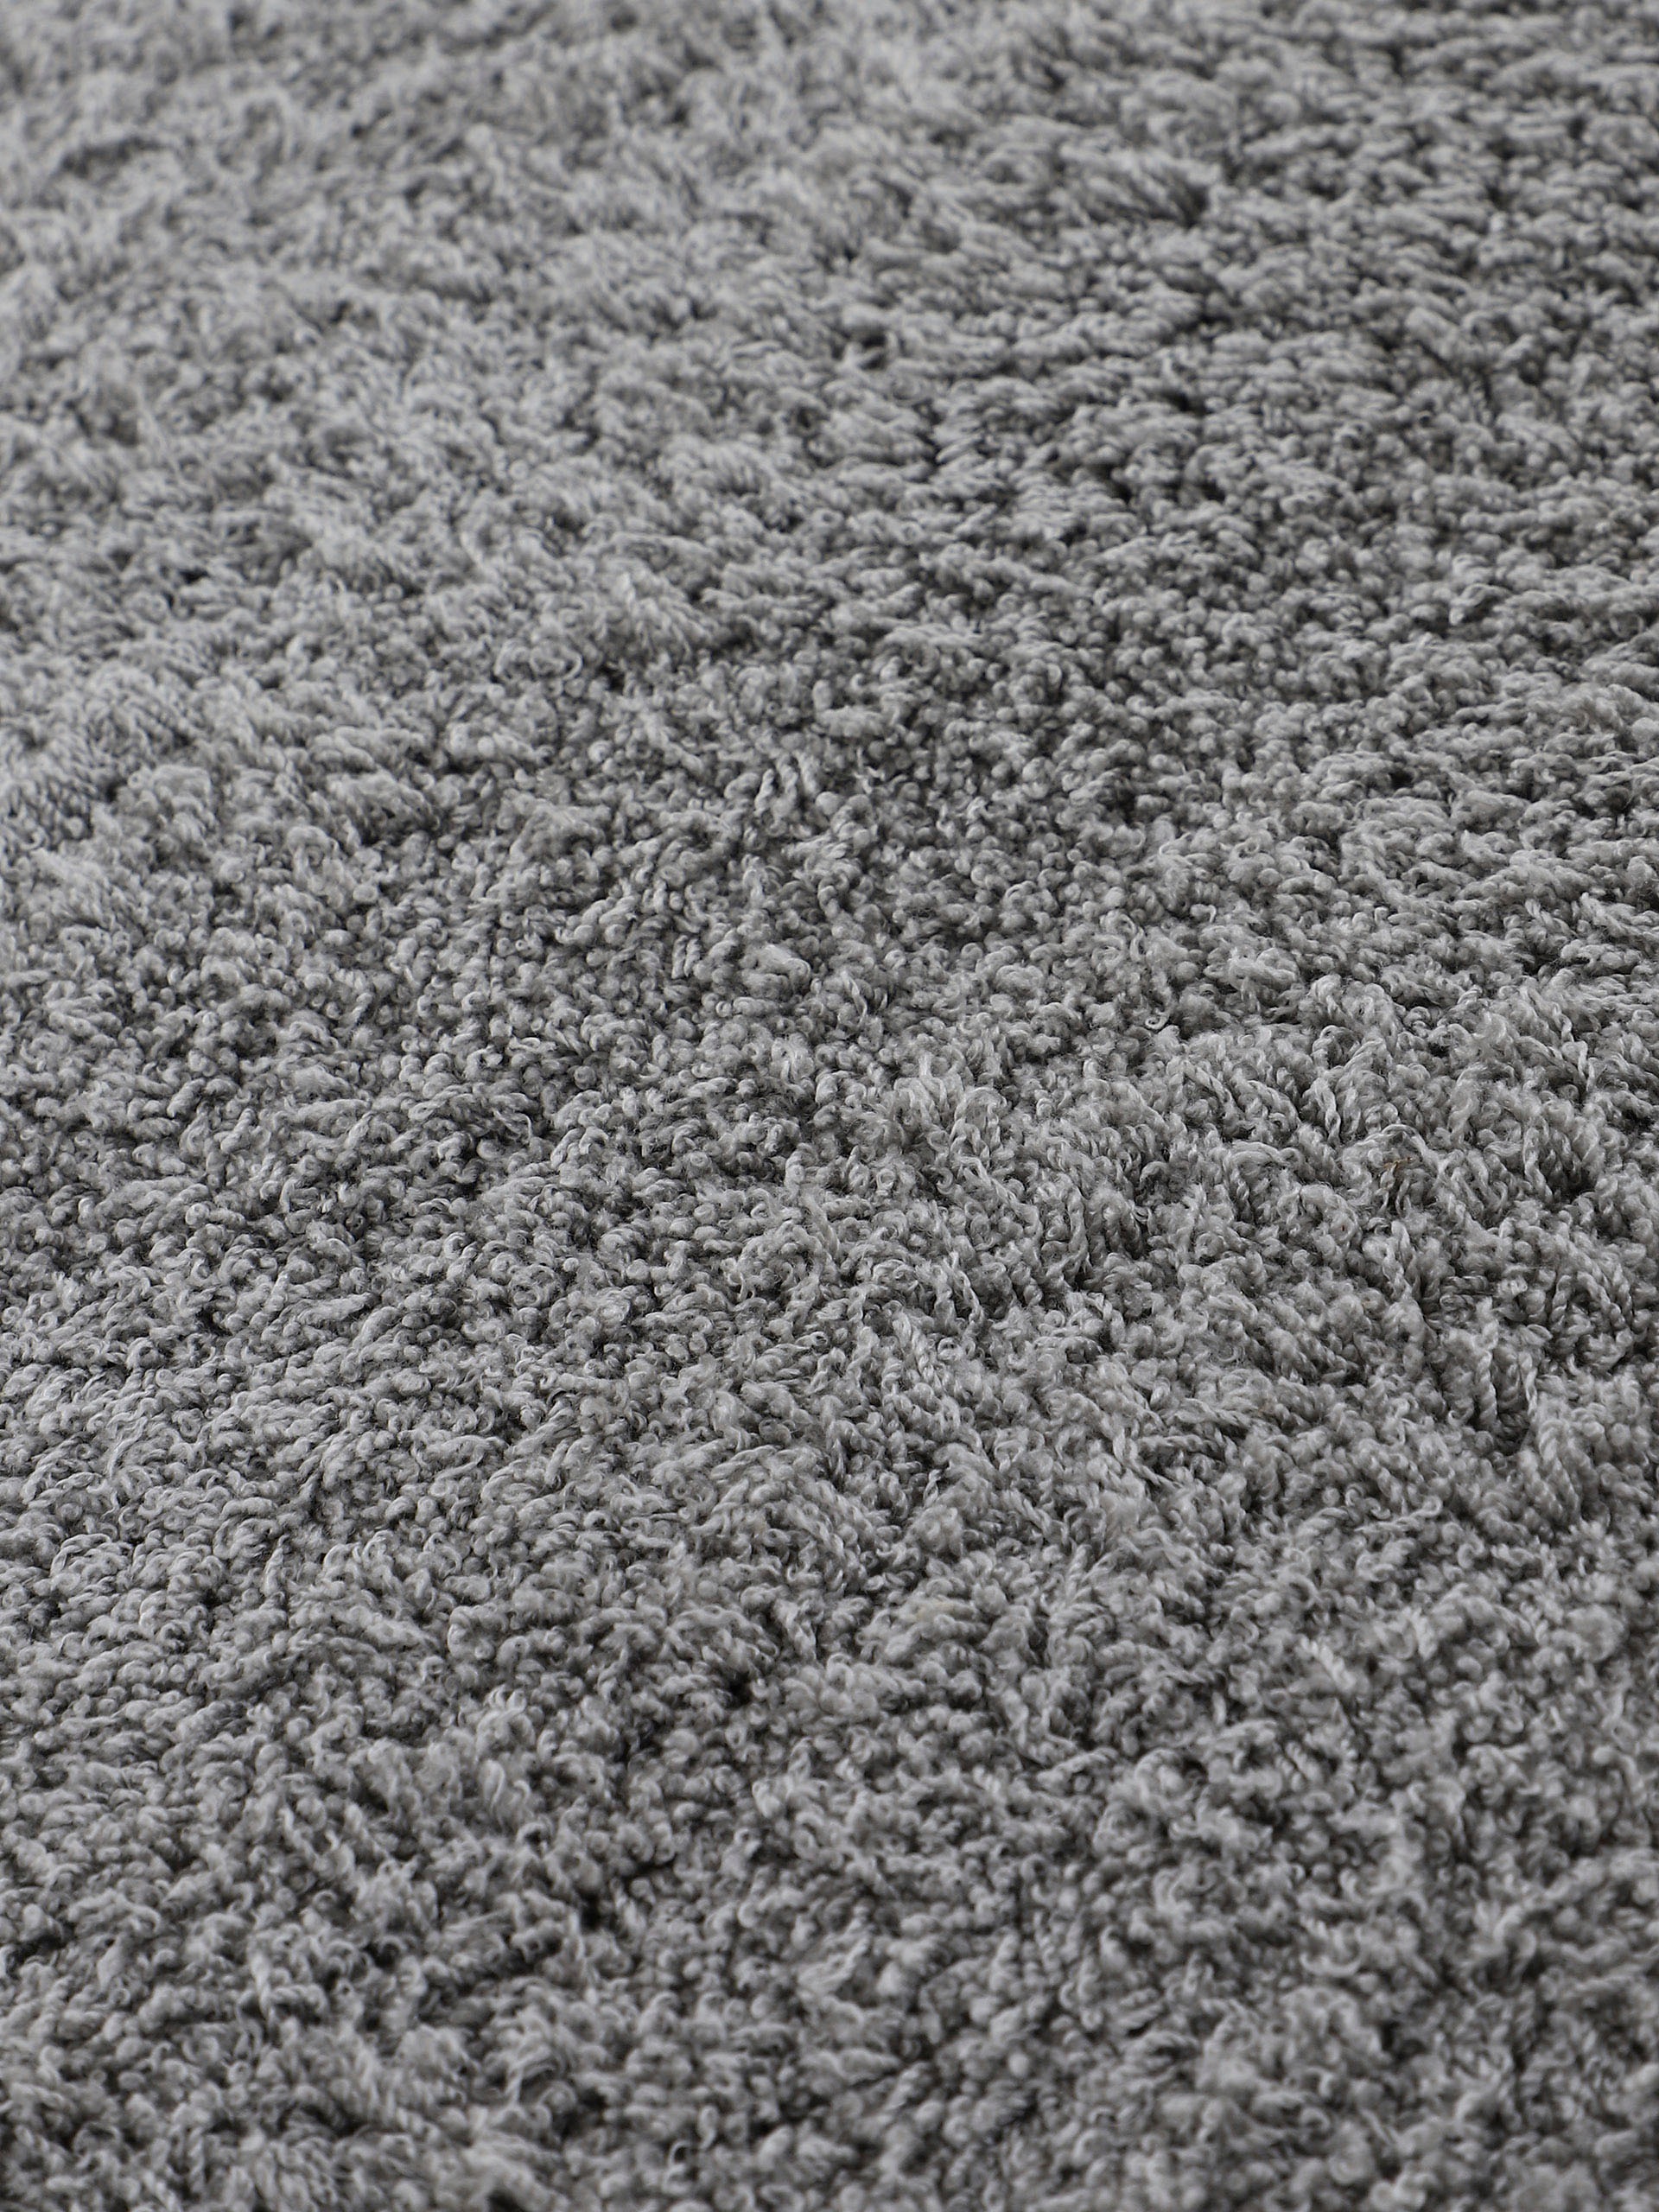 carpetfine Hochflor-Teppich »Silky«, rechteckig, Shaggy, Langflor, uni, besonders weich, handarbeit